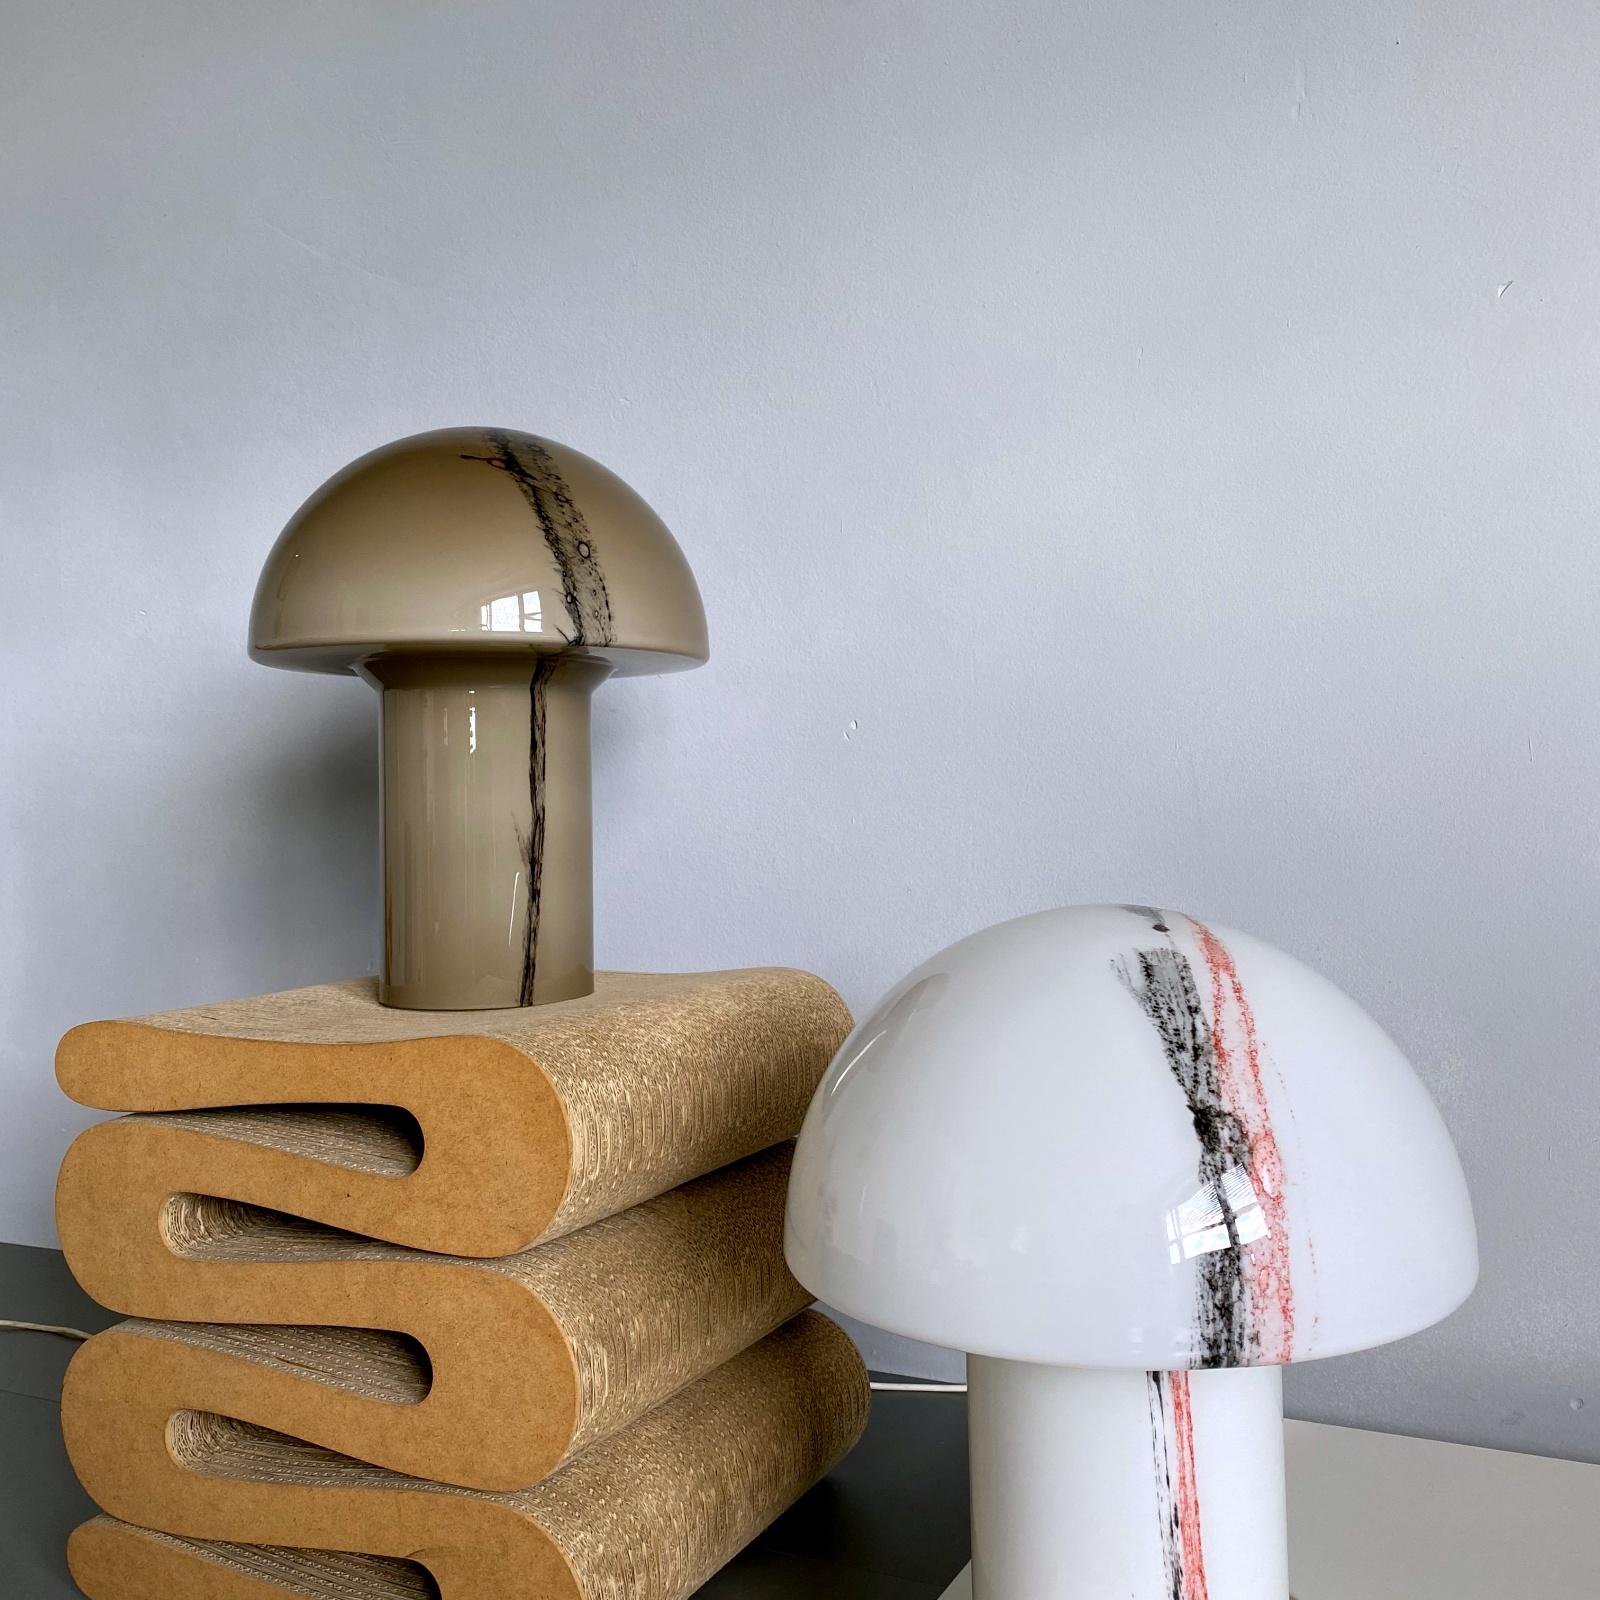 peill & putzler mushroom lamp